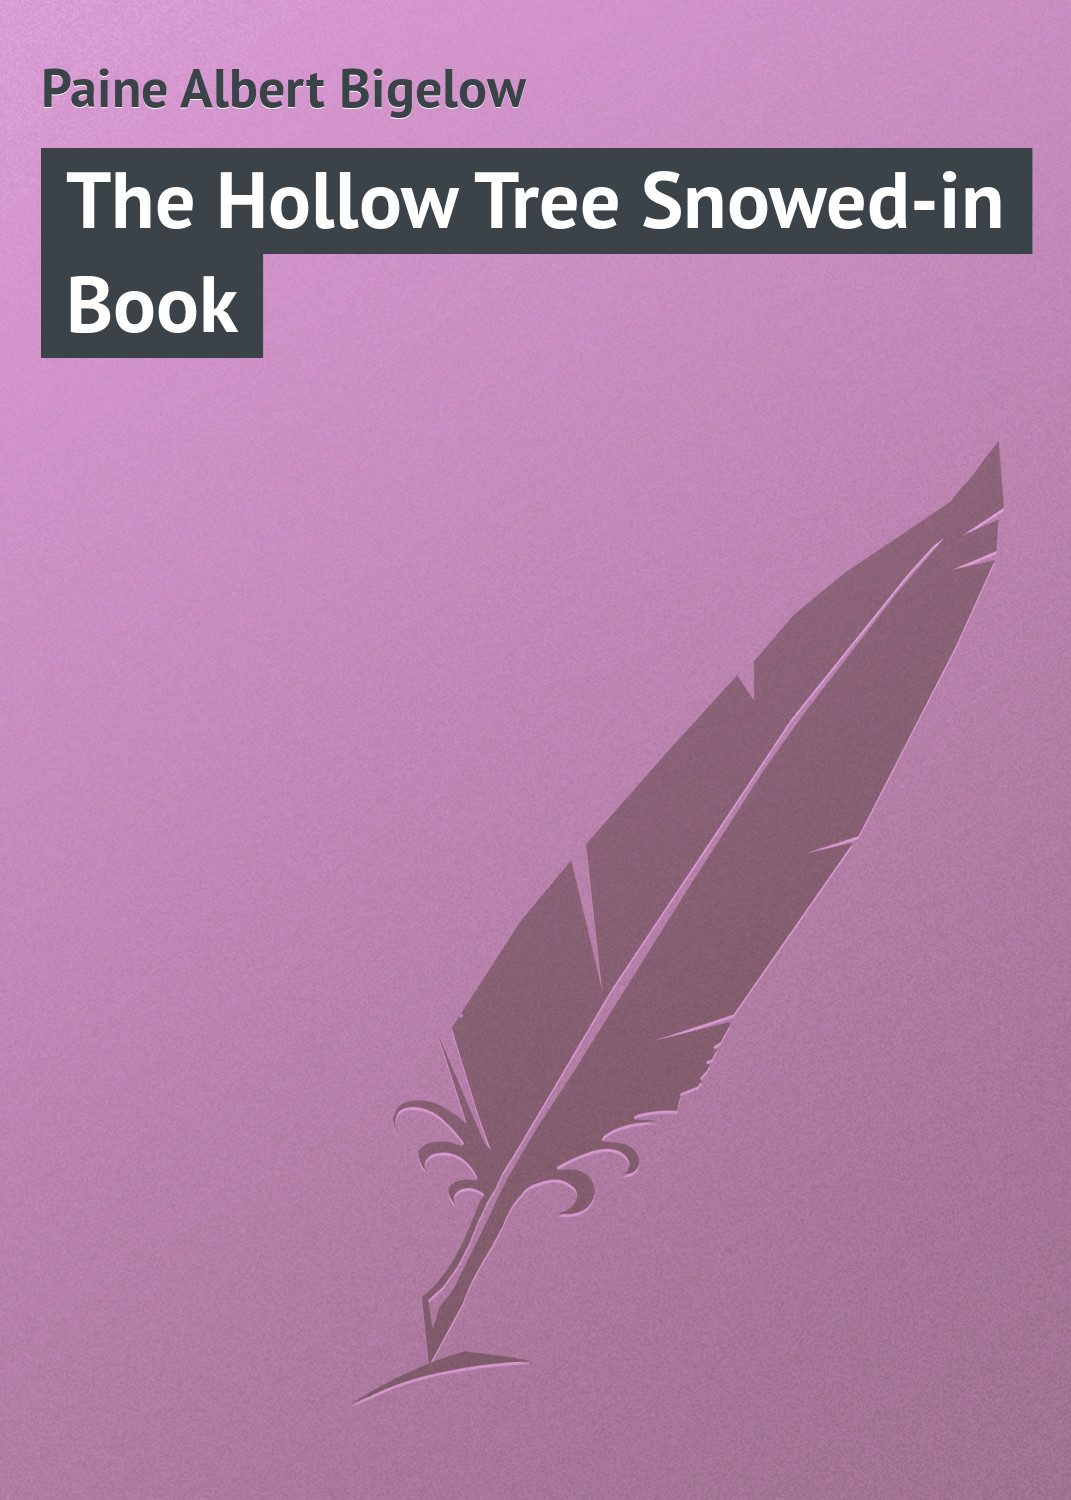 Книга The Hollow Tree Snowed-in Book из серии , созданная Albert Paine, может относится к жанру Природа и животные, Зарубежная классика, Зарубежные детские книги. Стоимость книги The Hollow Tree Snowed-in Book  с идентификатором 23144891 составляет 5.99 руб.